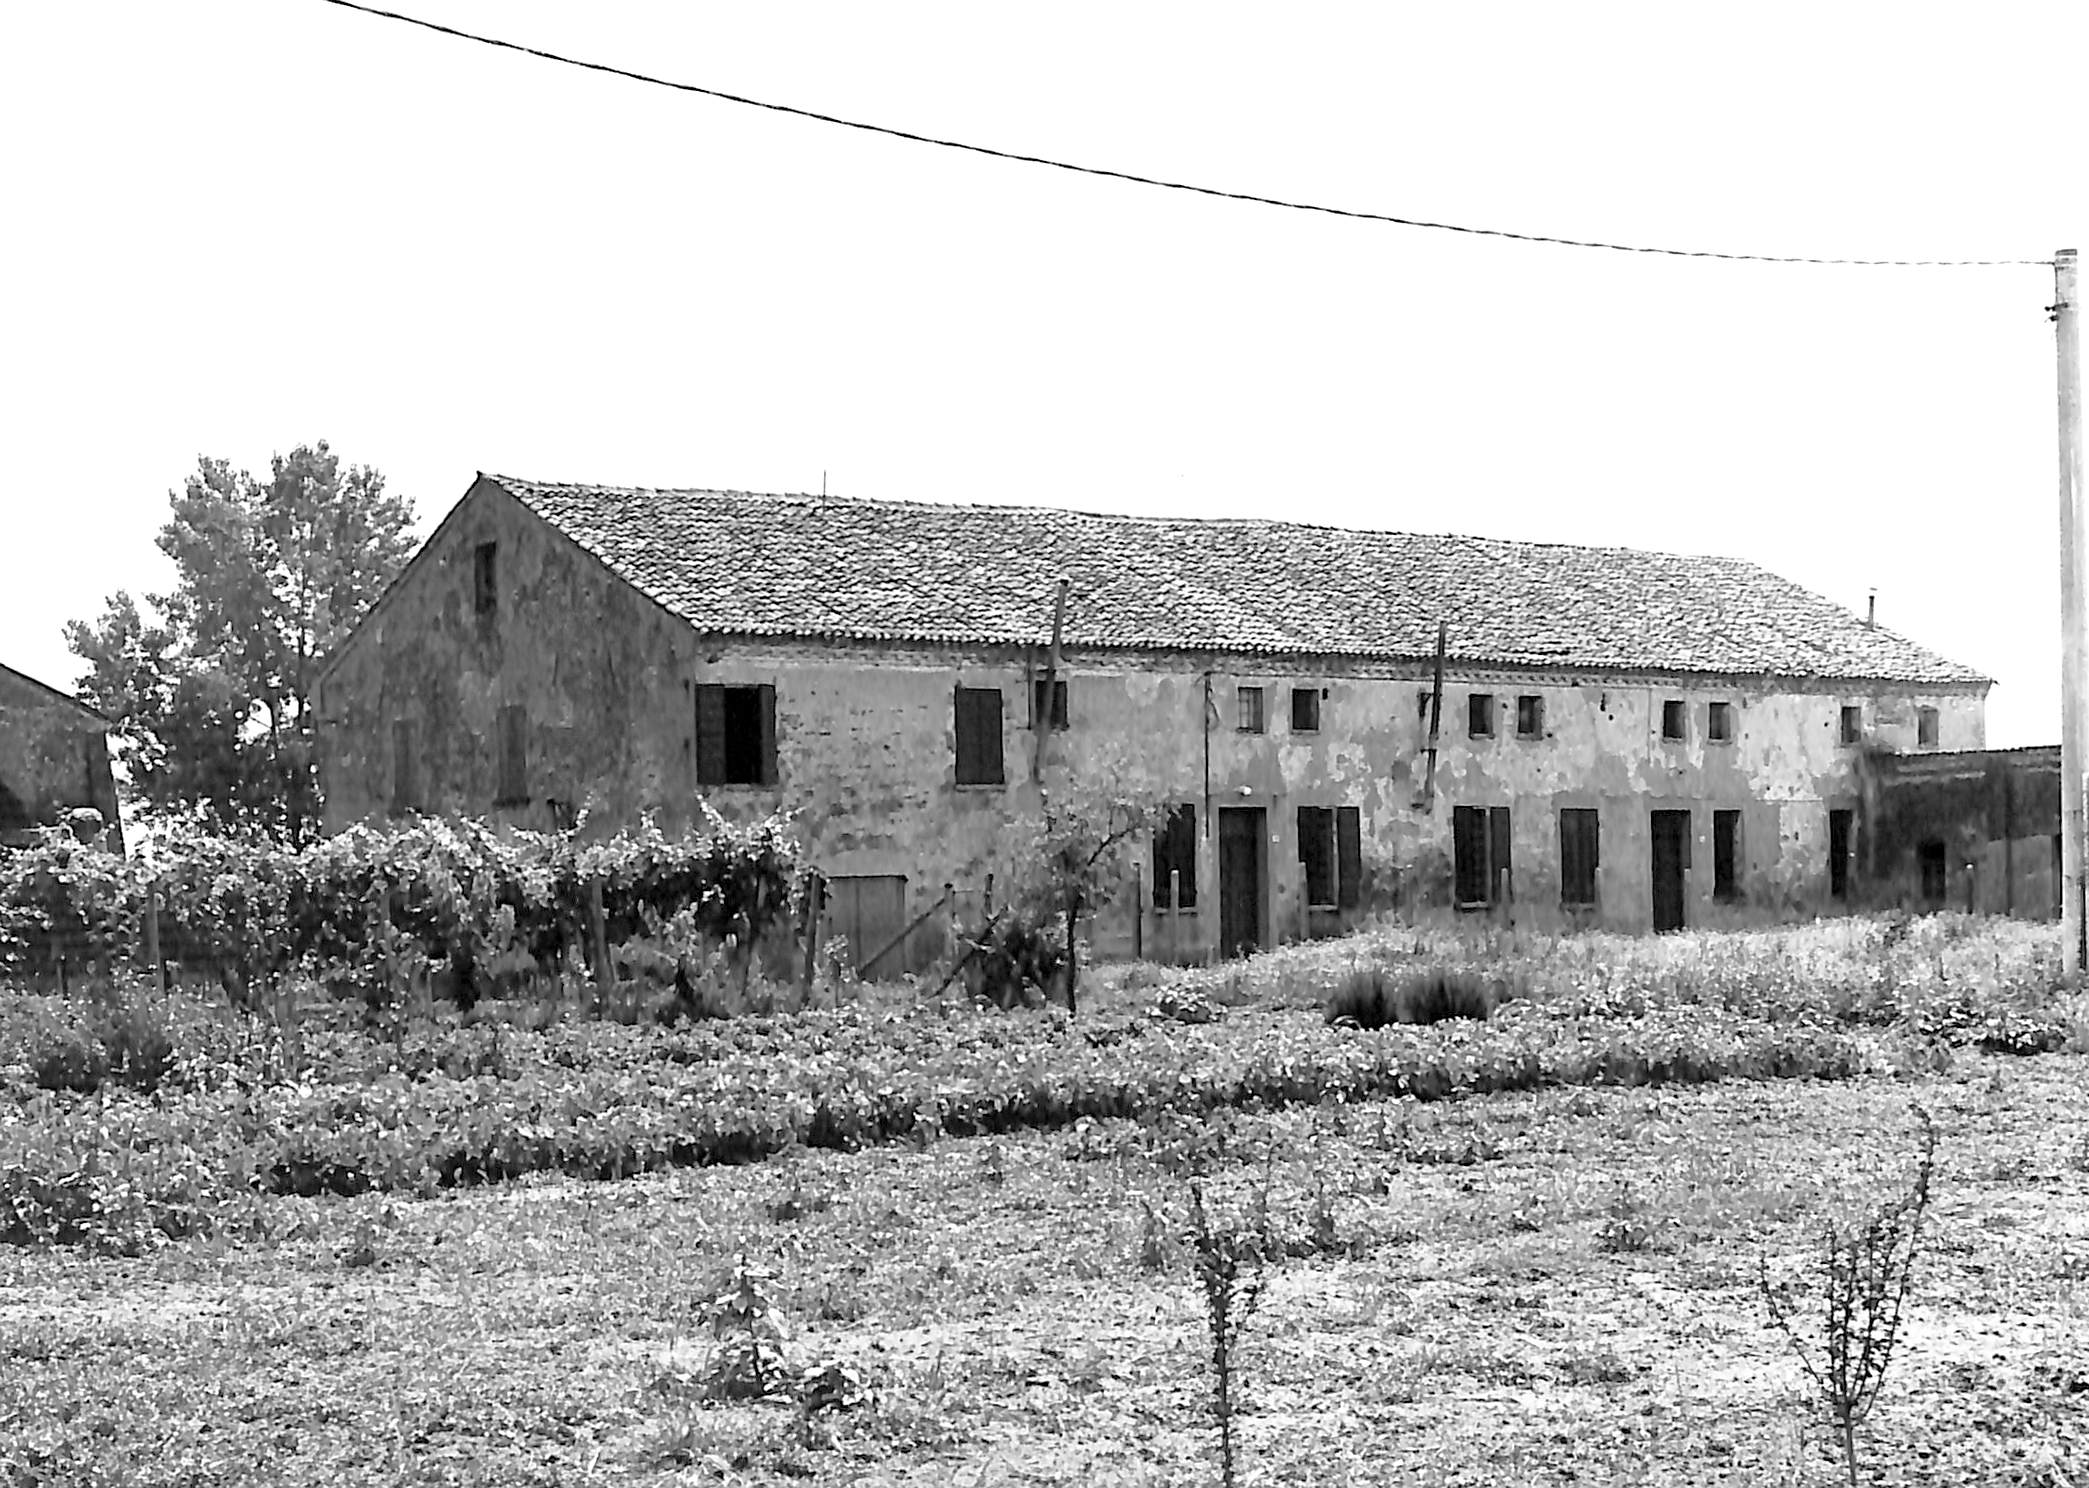 Boaria Saracca (casa a schiera, rurale) - Ficarolo (RO)  (XVIII, metà)